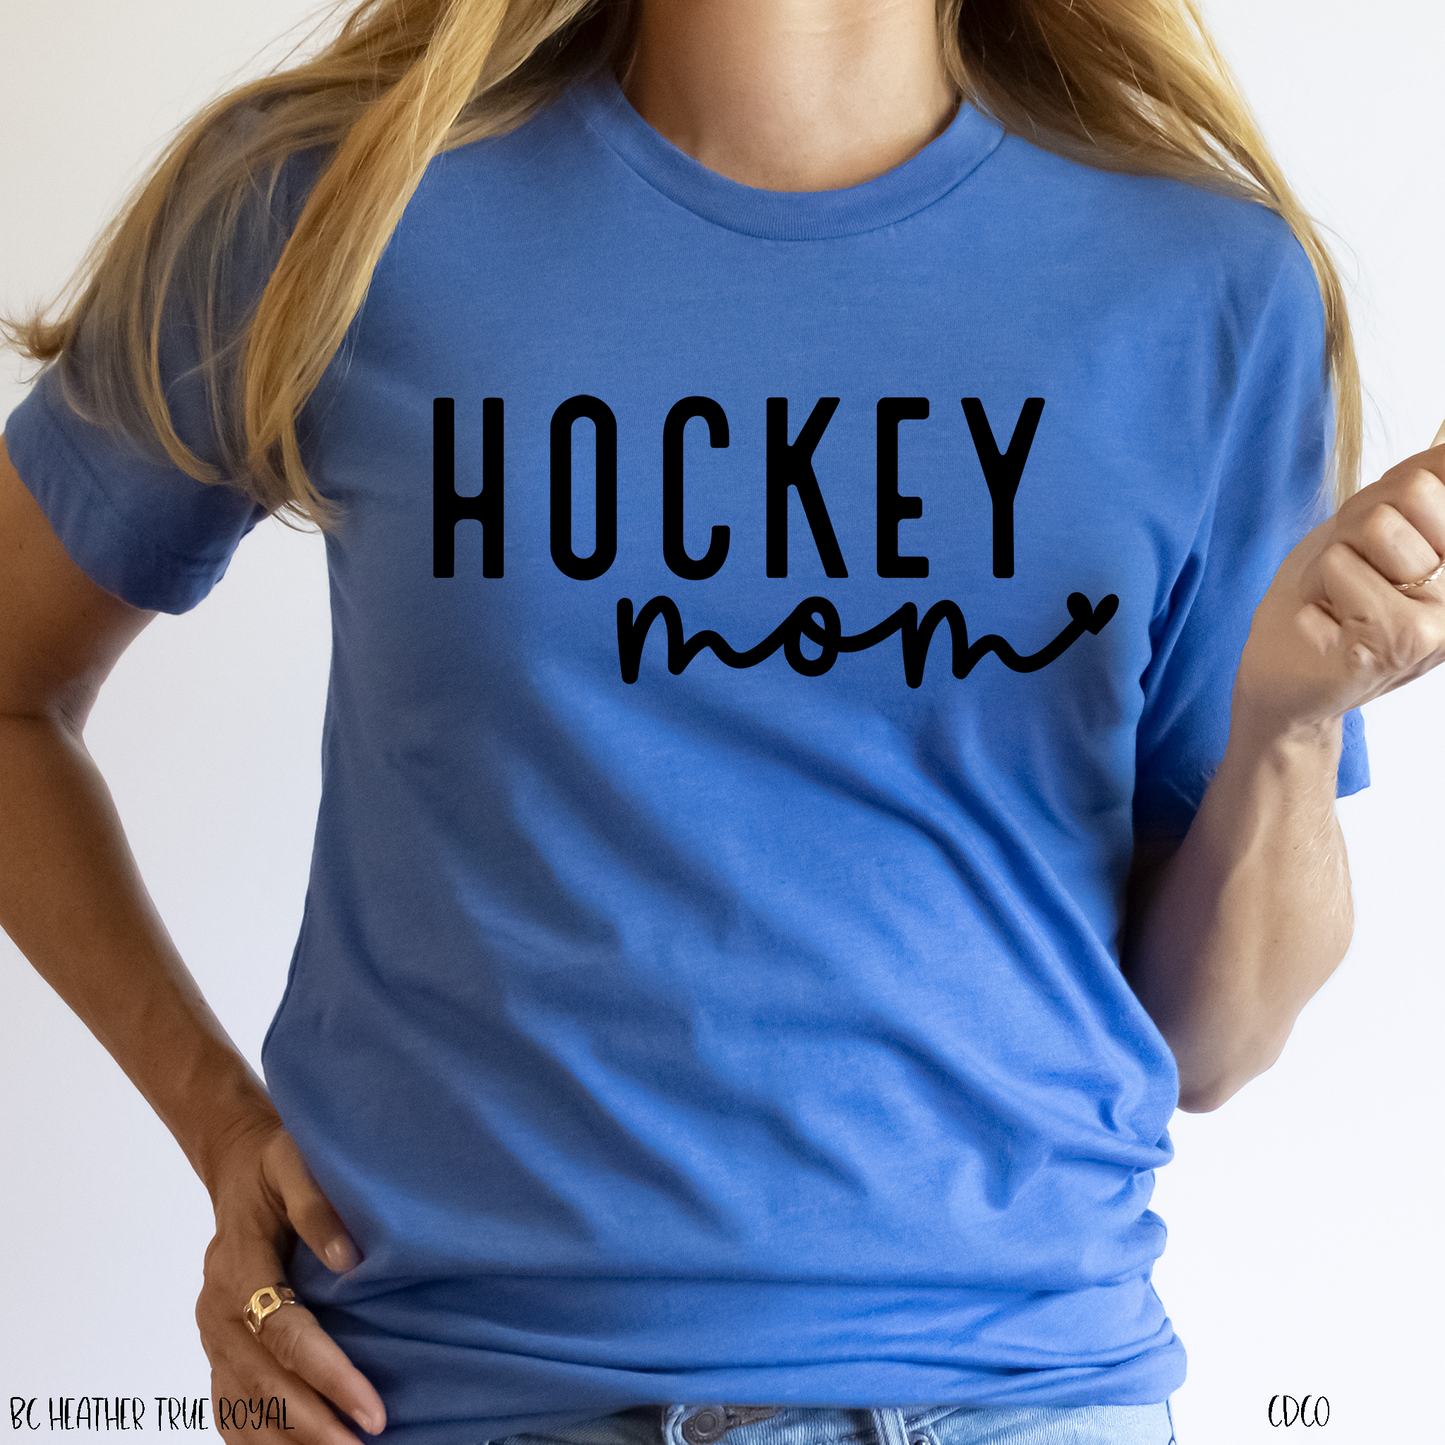 Hockey Mom (325°)